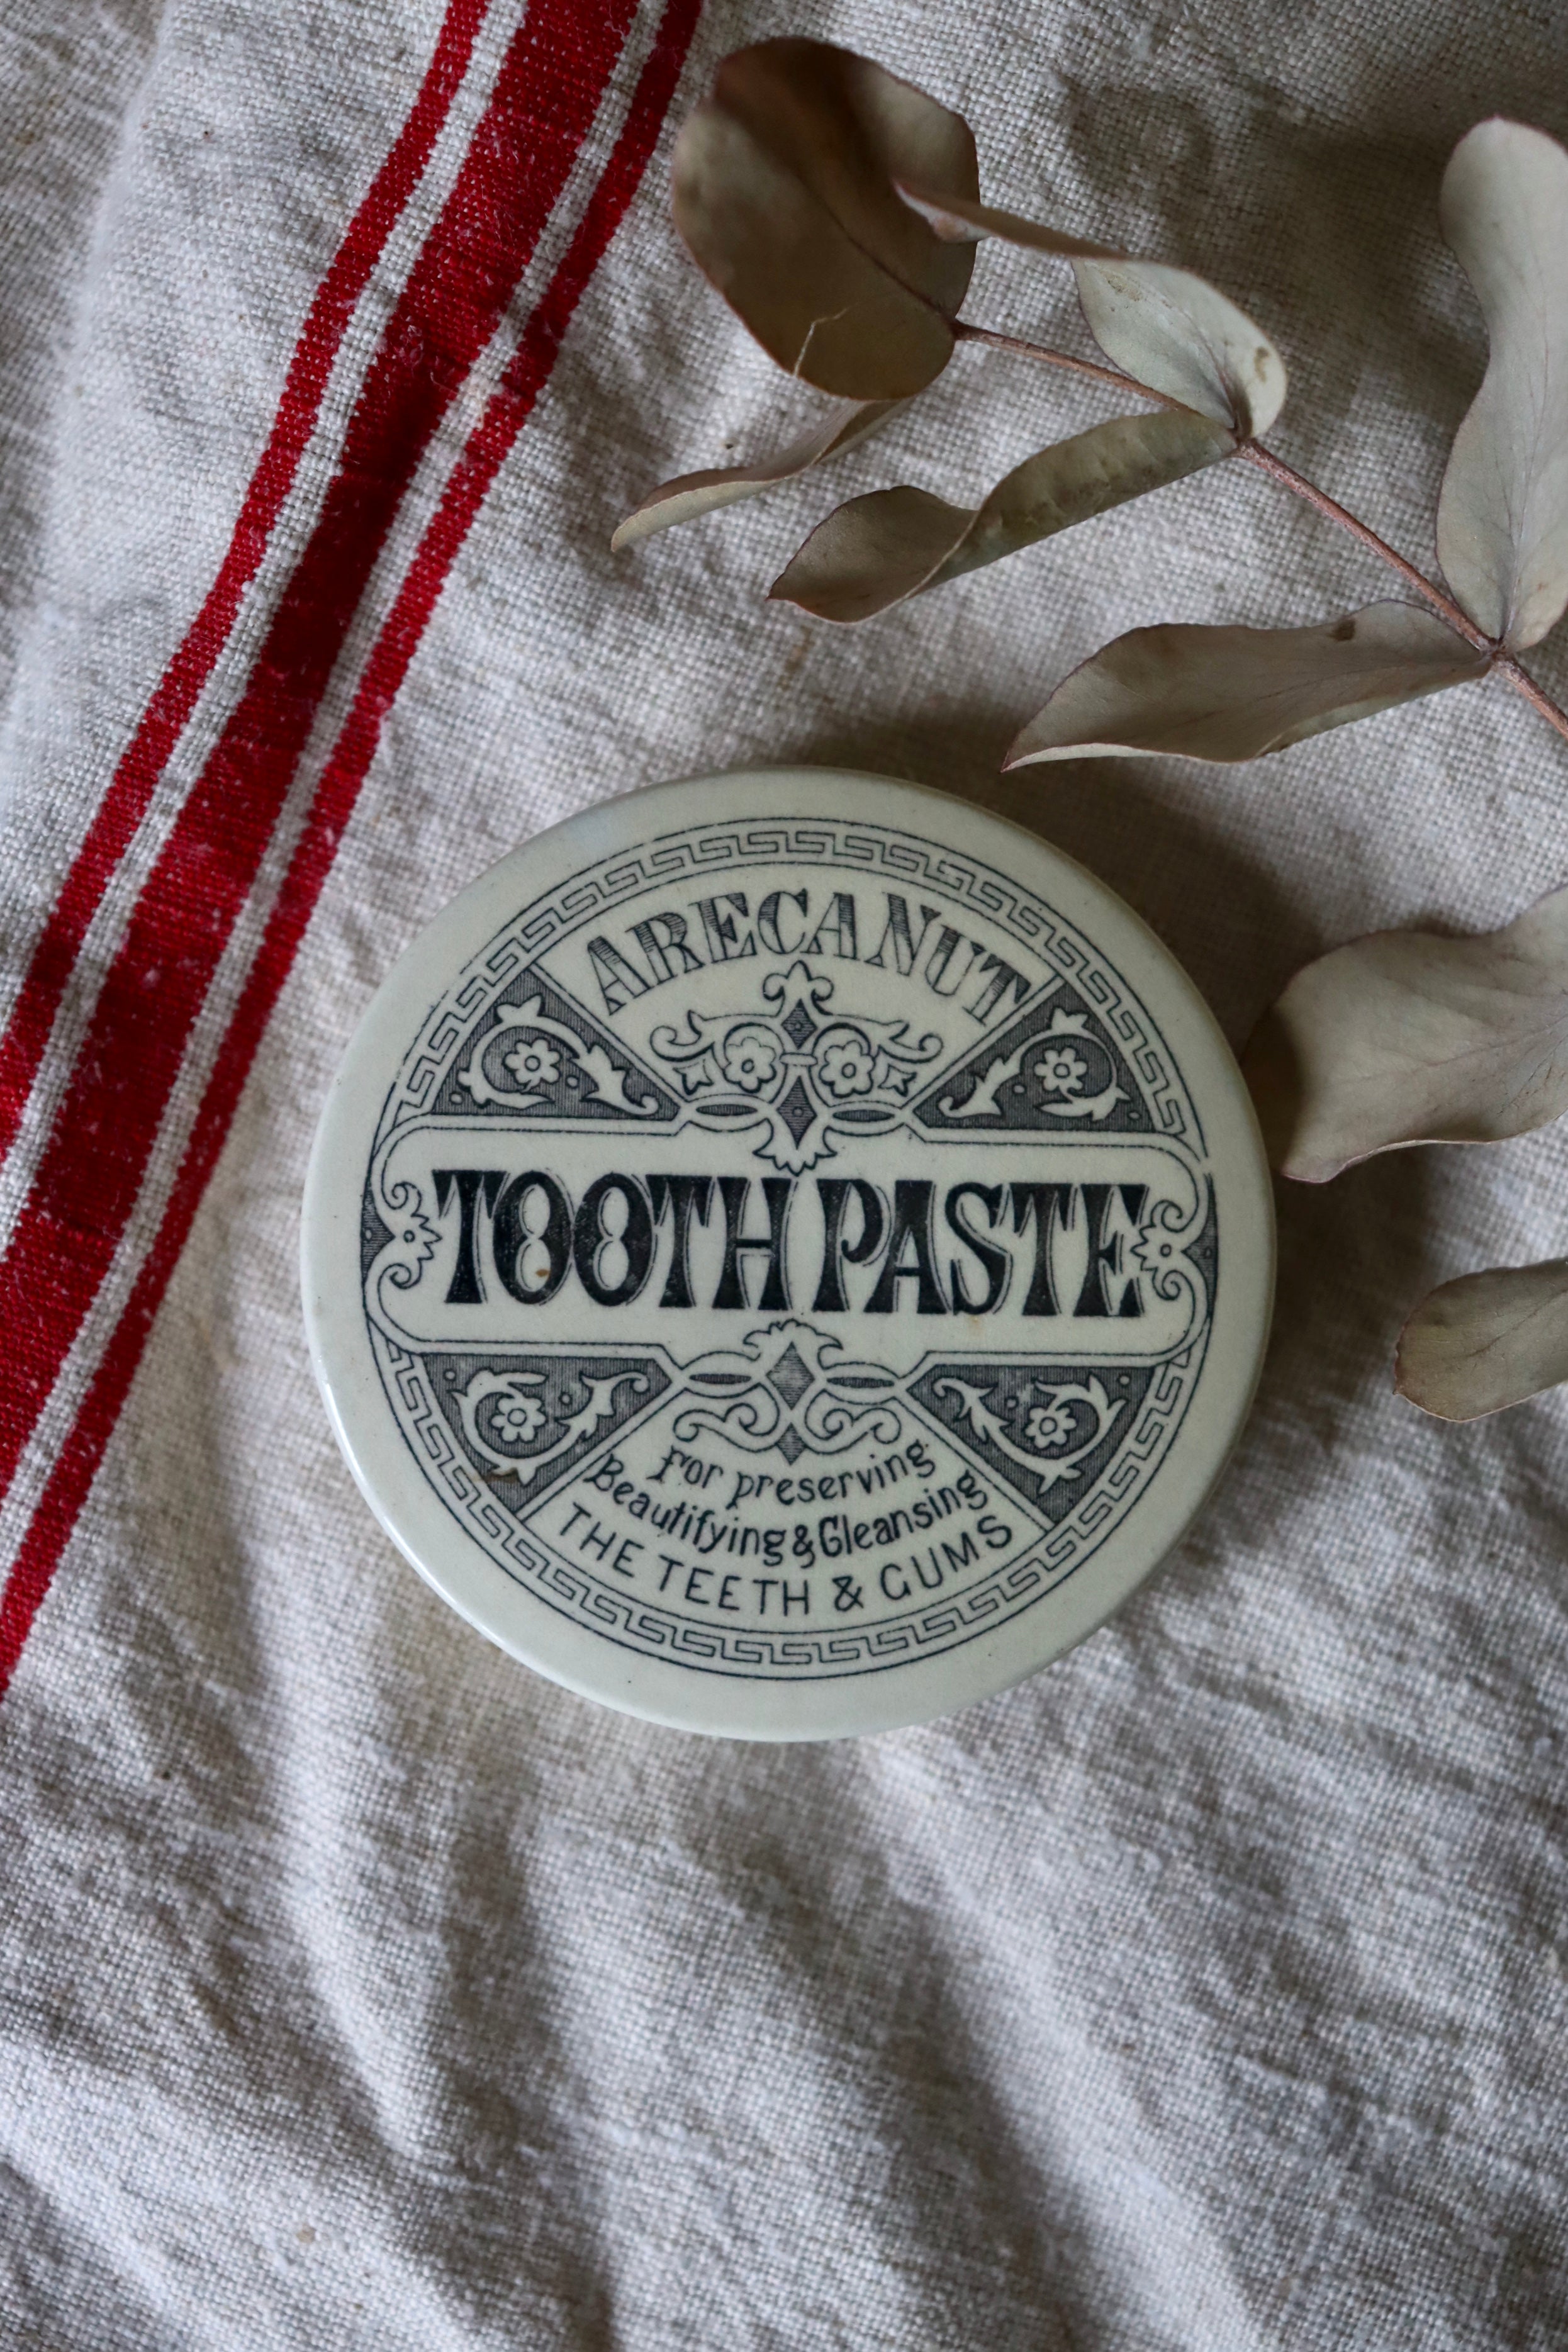 Antique Areca Nut Tooth Paste Pot Lid